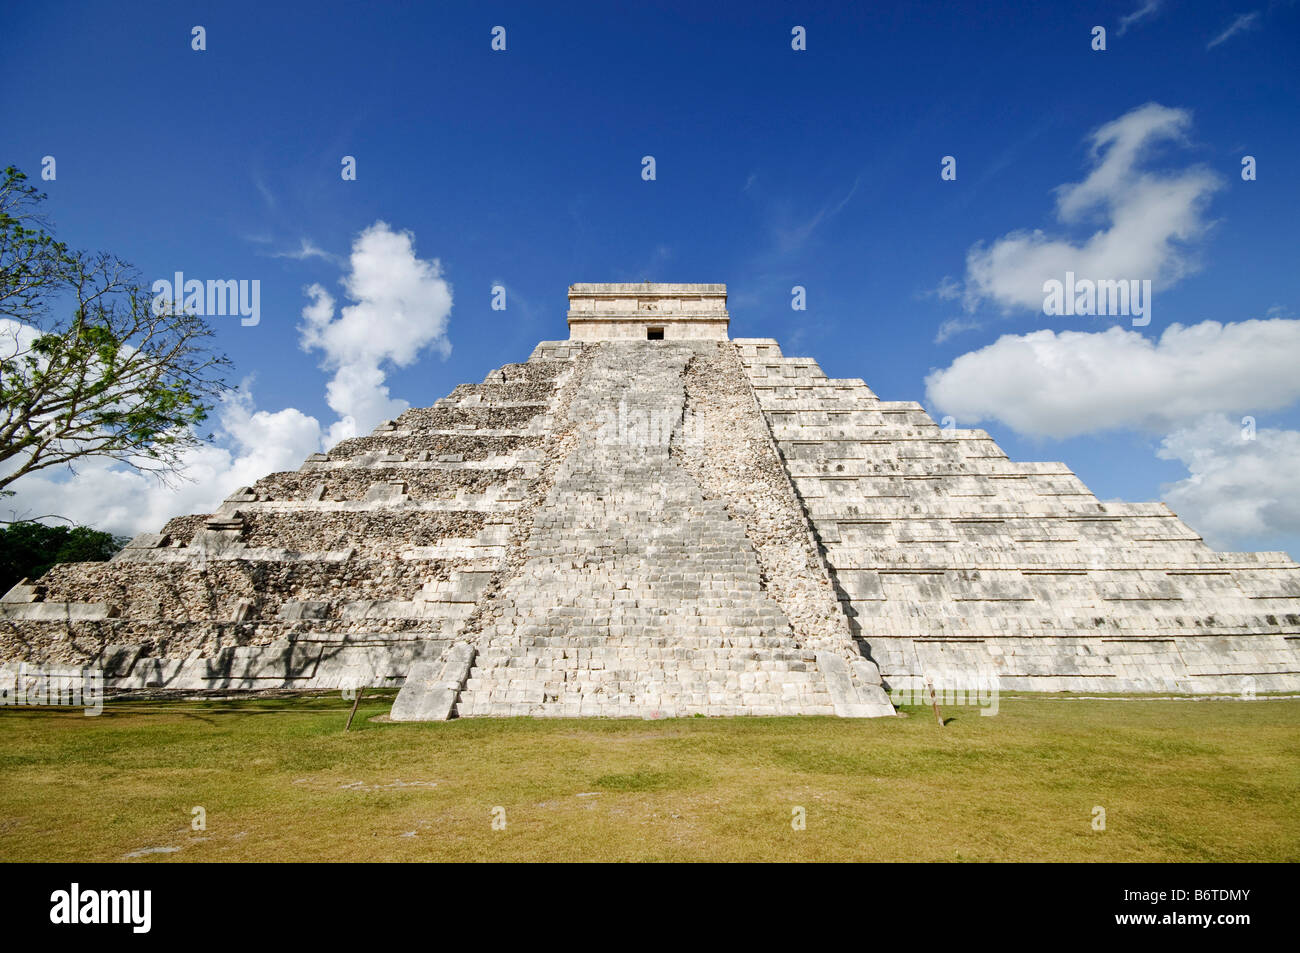 CHICHEN ITZA, Mexiko - El Castillo (auch bekannt als Tempel von Kuklcan) an den antiken Maya-Ruinen in Chichen Itza, Yucatan, Mexiko 081216103340 4546.NEF. Chichen Itza befindet sich auf der Yucatan-Halbinsel in Mexiko und ist eine bedeutende archäologische Stätte, die die reiche Geschichte und fortgeschrittene wissenschaftliche Kenntnisse der alten Maya-Zivilisation zeigt. Sie ist vor allem bekannt für die Kukulkan Pyramide, oder „El Castillo“, eine vierseitige Struktur mit 91 Stufen auf jeder Seite, die in einem einzigen Schritt auf der Spitze gipfelt, um die 365 Tage des Sonnenjahres zu repräsentieren. Stockfoto